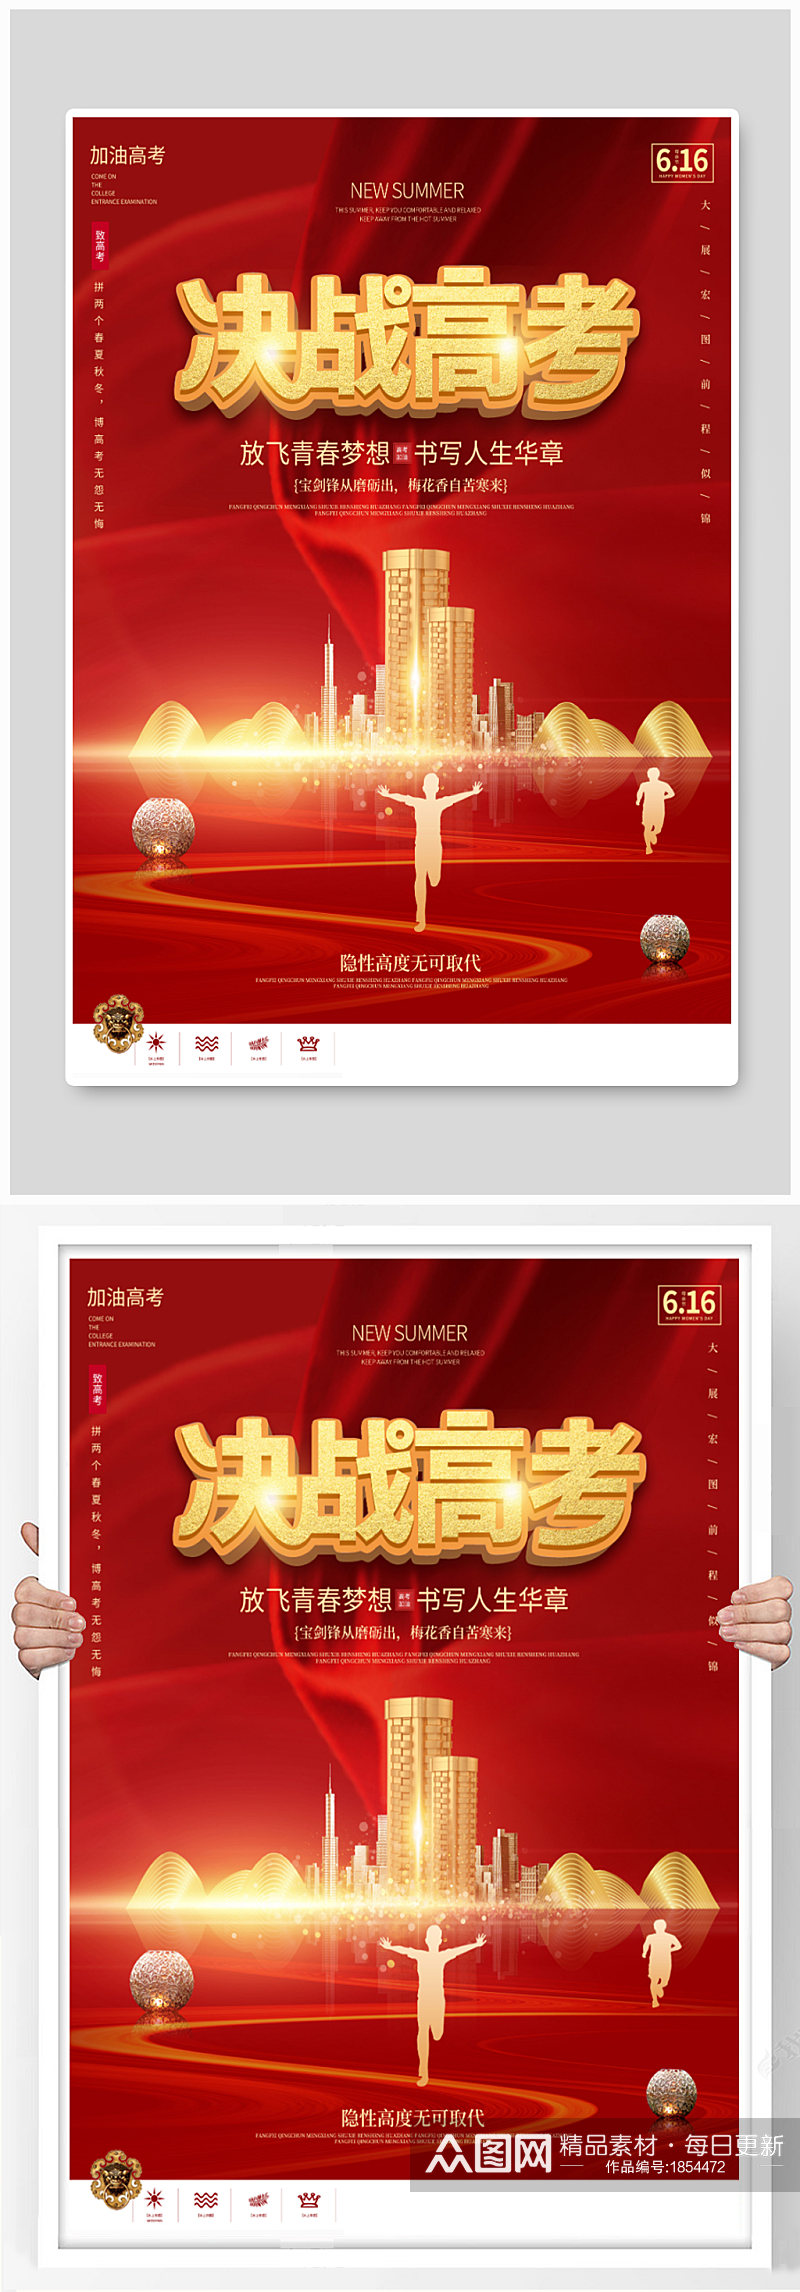 简约红色喜庆高考房地产营销宣传海报素材